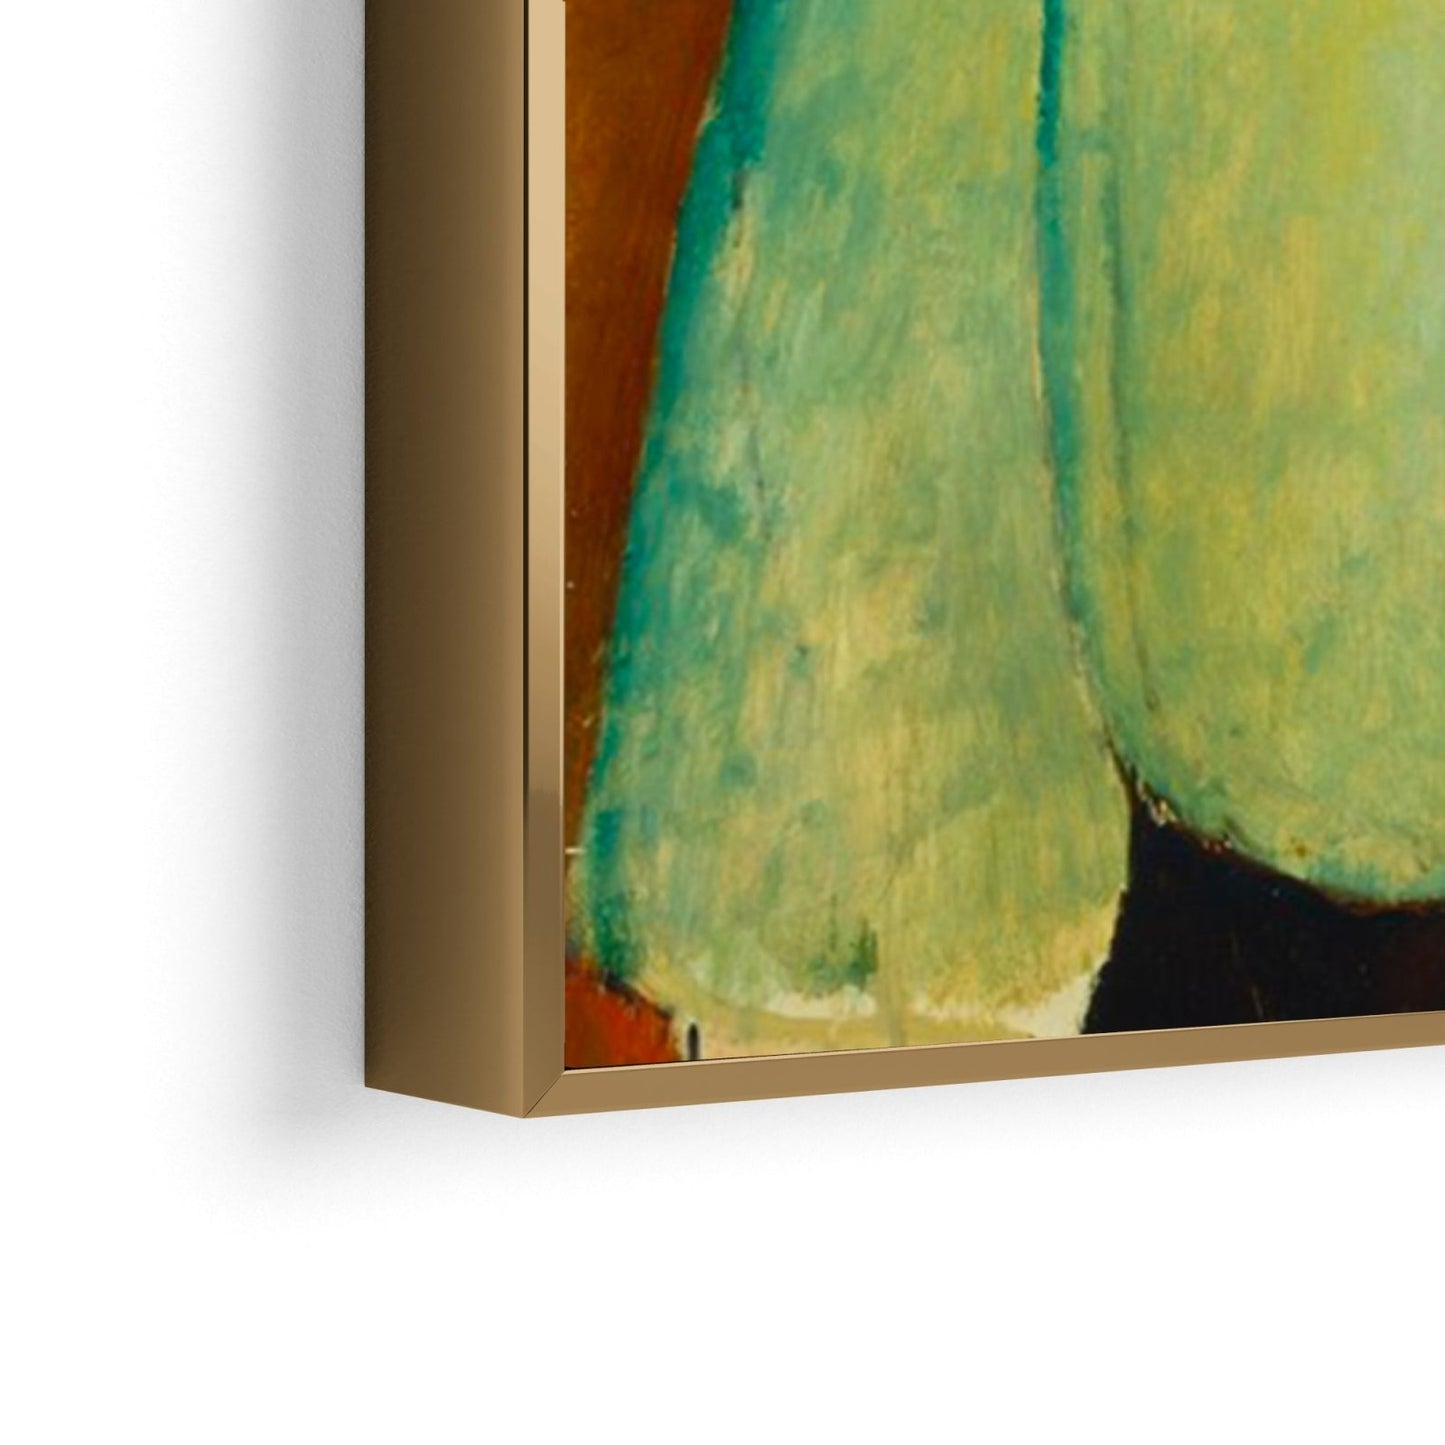 Mädchen in grüner Bluse, Amedeo Modigliani